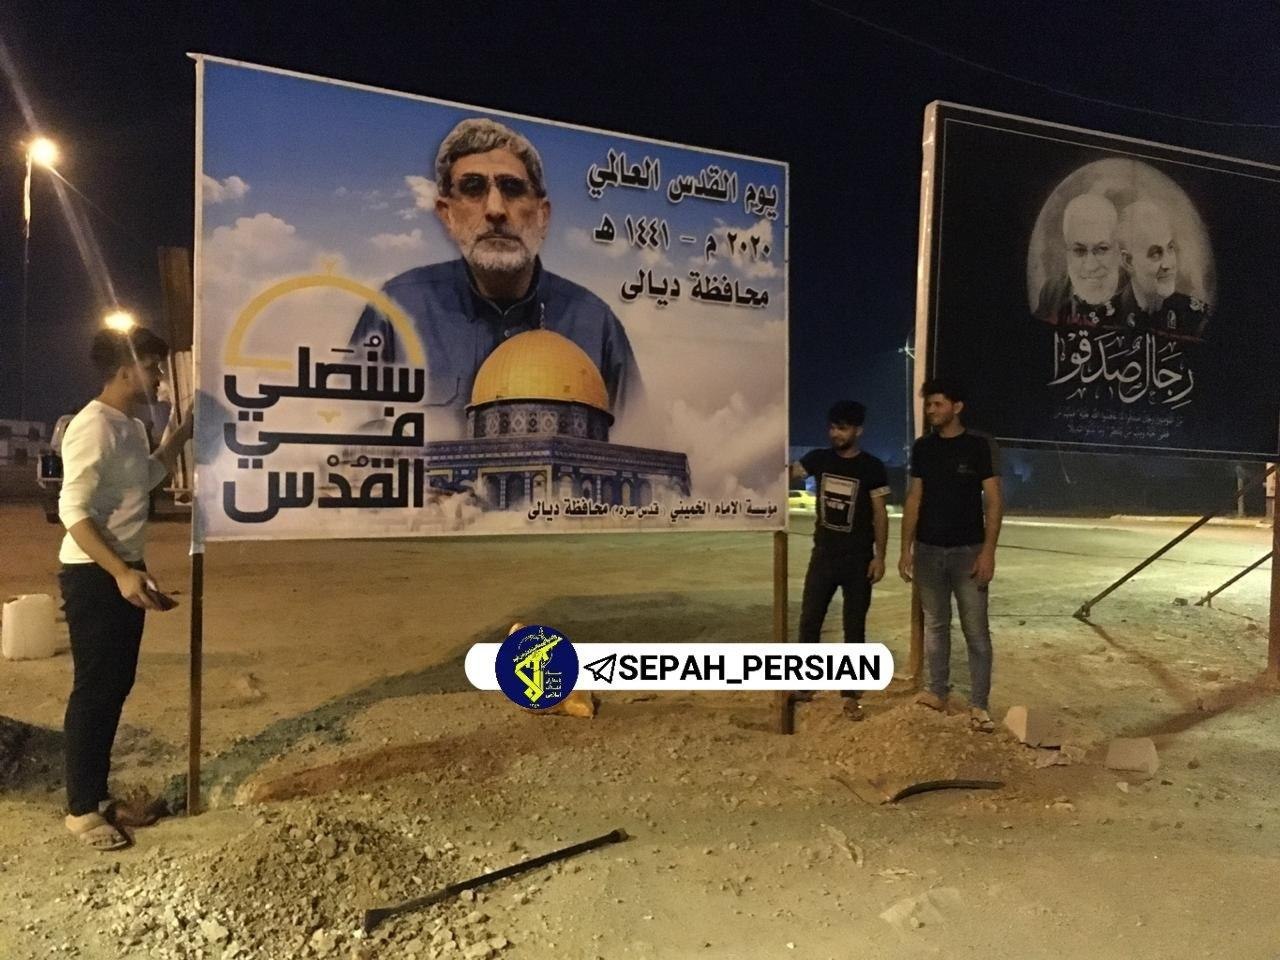 نصب پوستر سردار قاآنی در کنار شهید سلیمانی در عراق + عکس